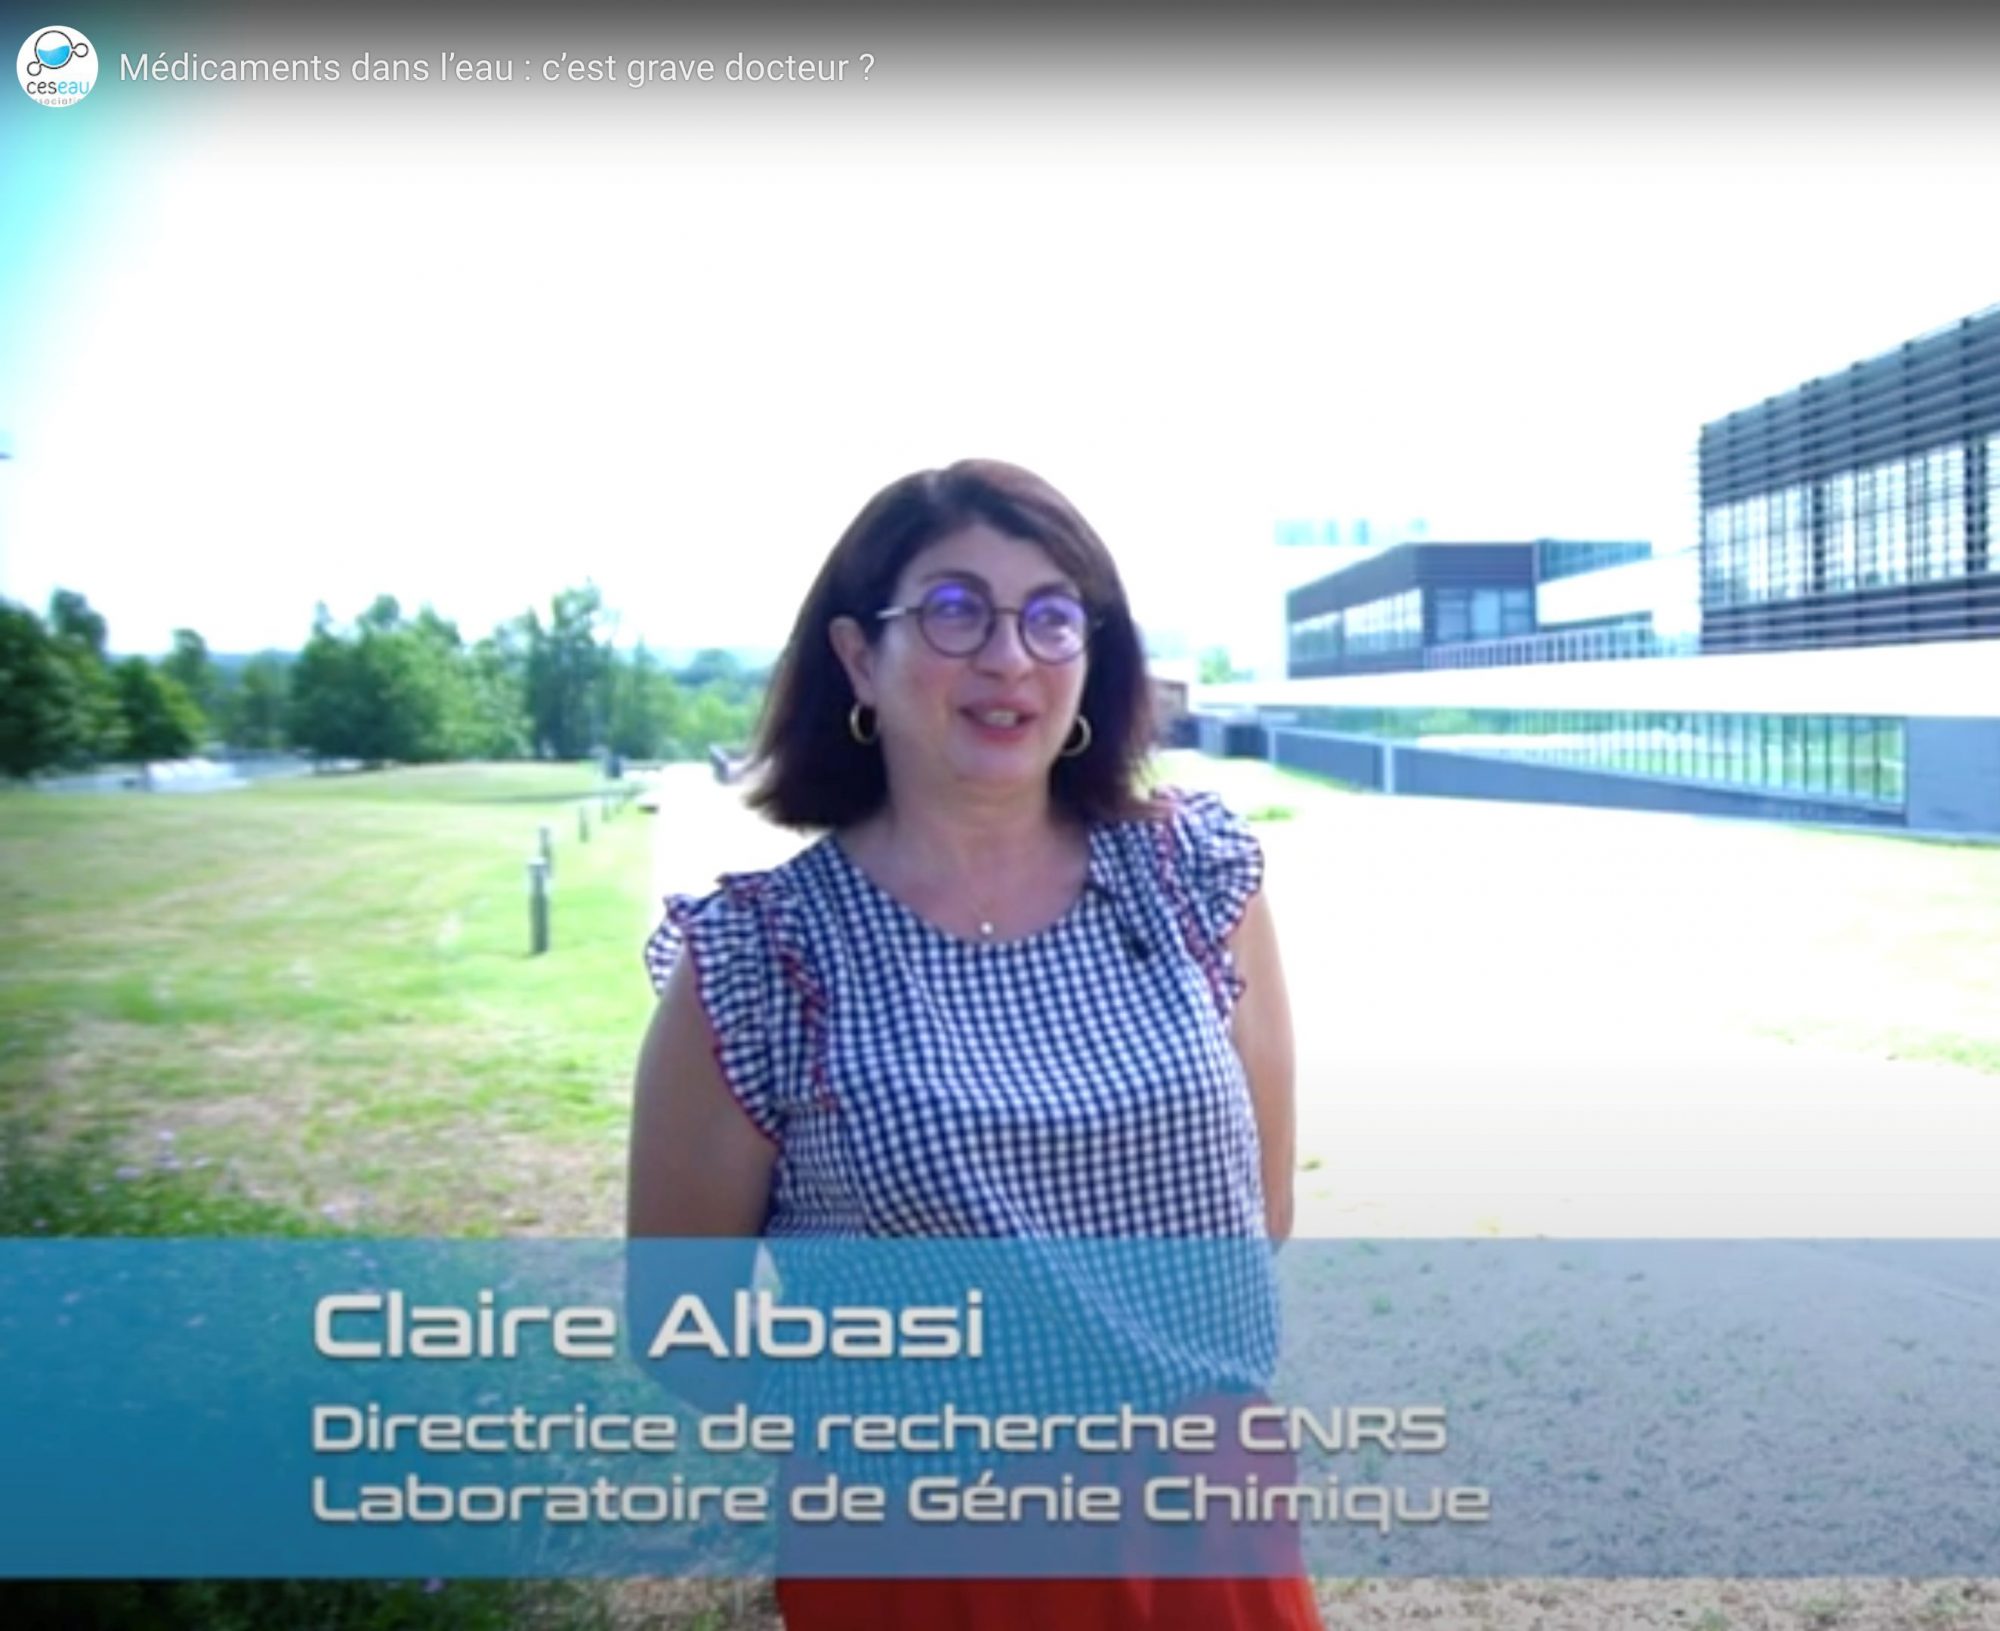 « 3 minutes pour comprendre », avec Claire Albasi, Directrice de recherche CNRS au Laboratoire de Génie Chimique de Toulouse